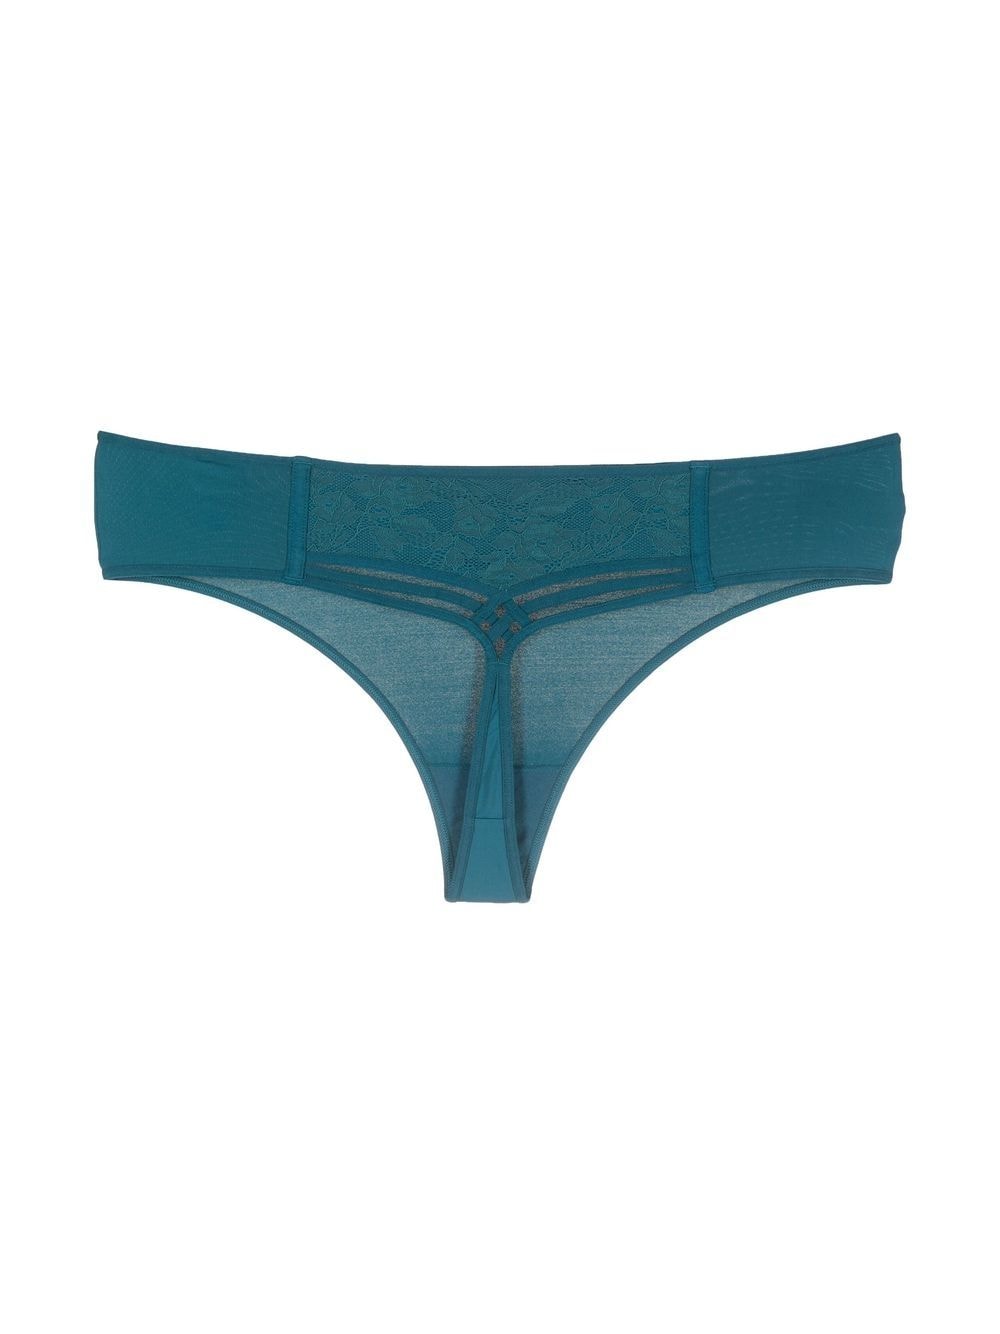 Marlies Dekkers slim-fit mid-rise thong - Blue von Marlies Dekkers